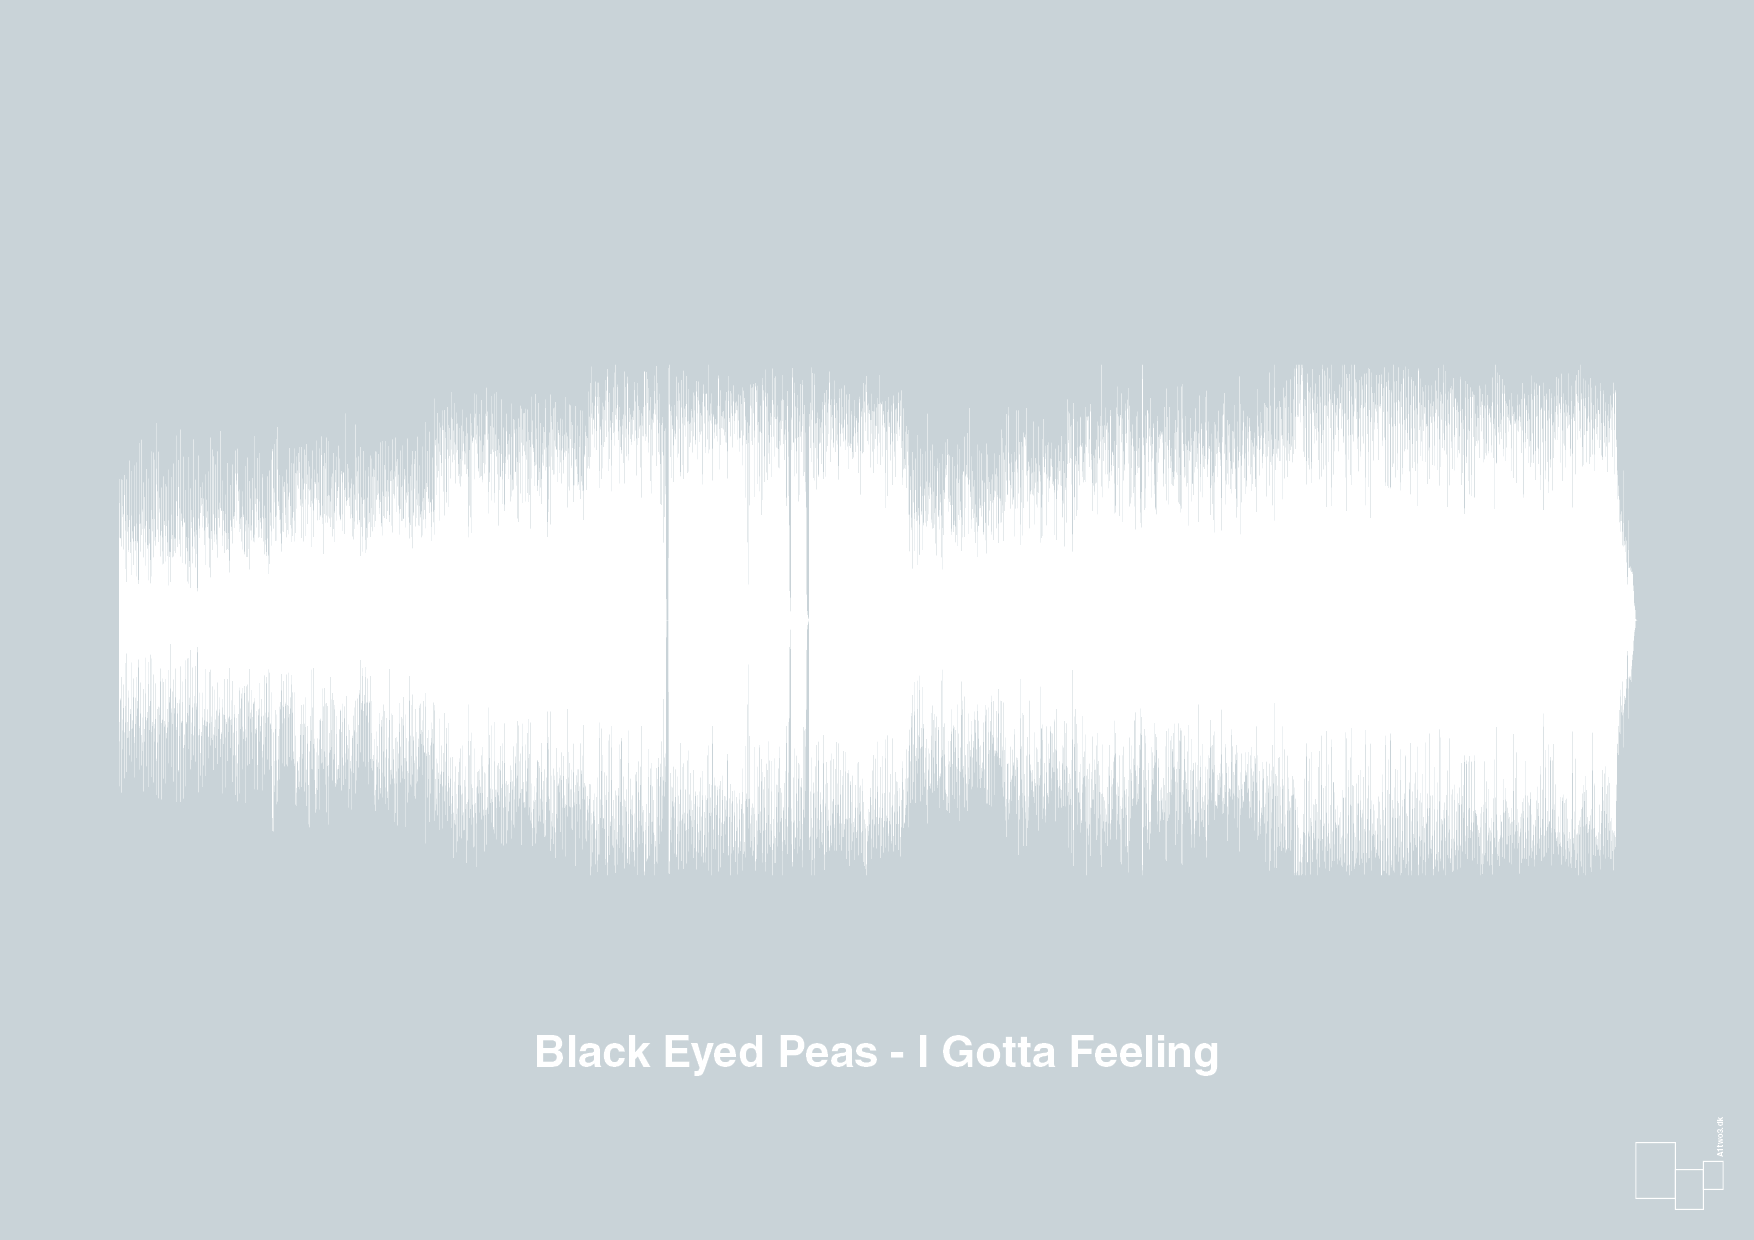 black eyed peas - i gotta feeling - Plakat med Musik i Light Drizzle